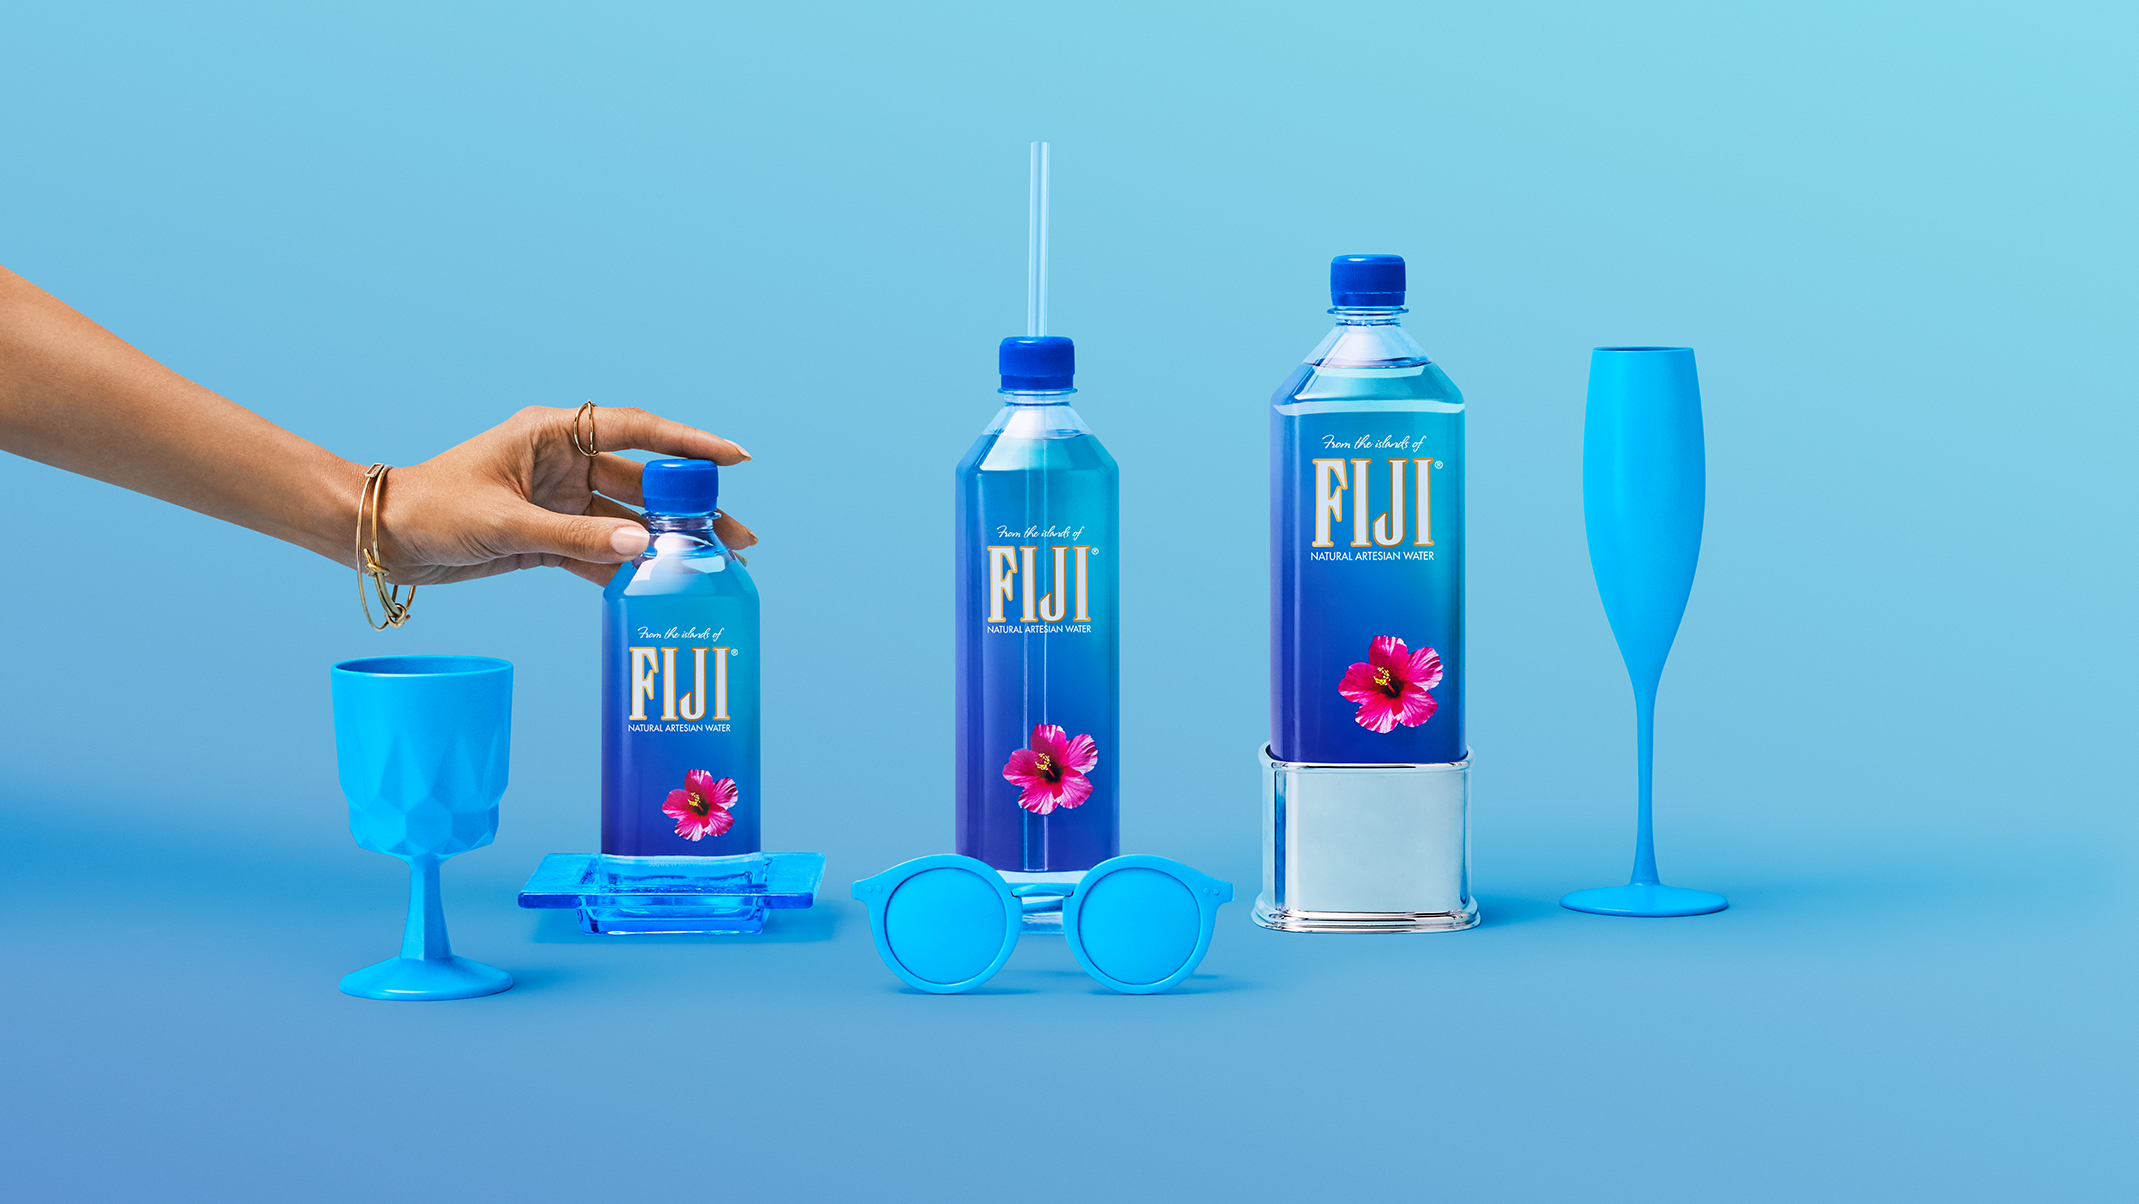 Fiji 